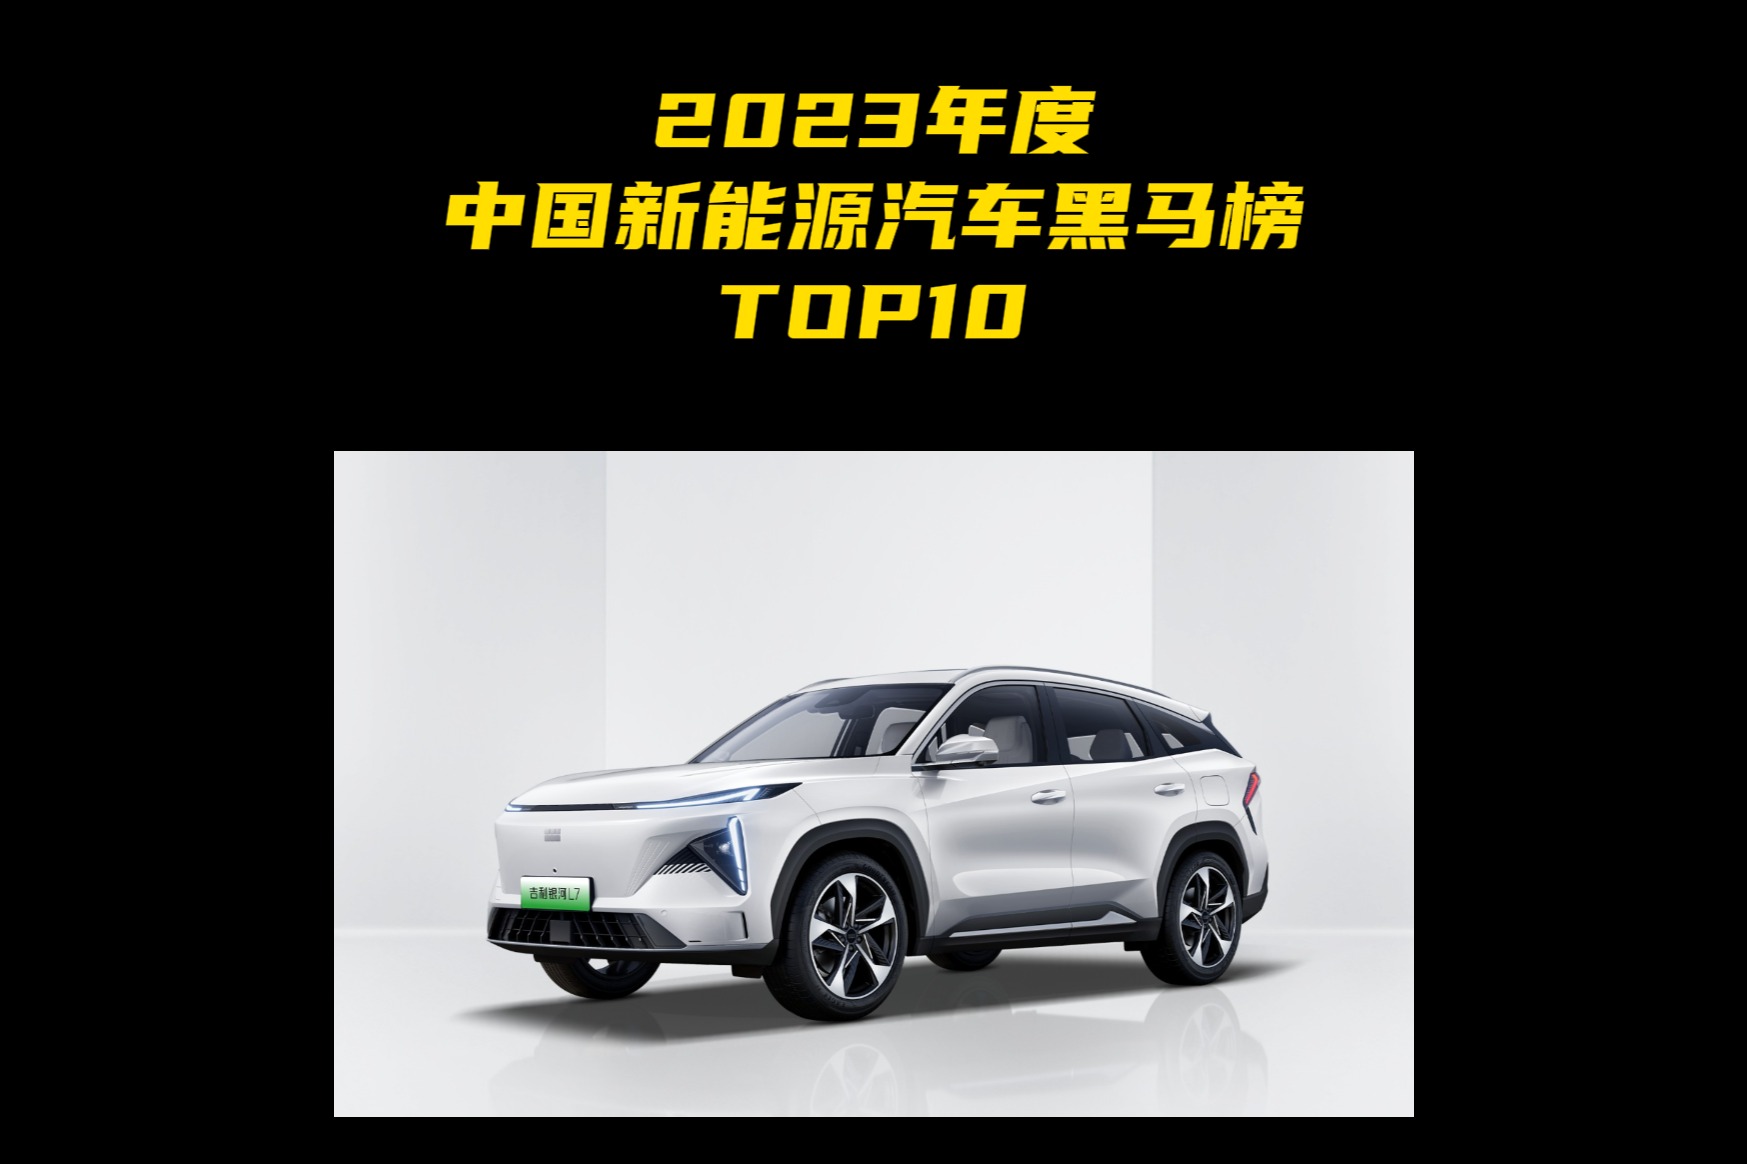 2023年度中国新能源汽车黑马榜TOP10 第七名：银河L7